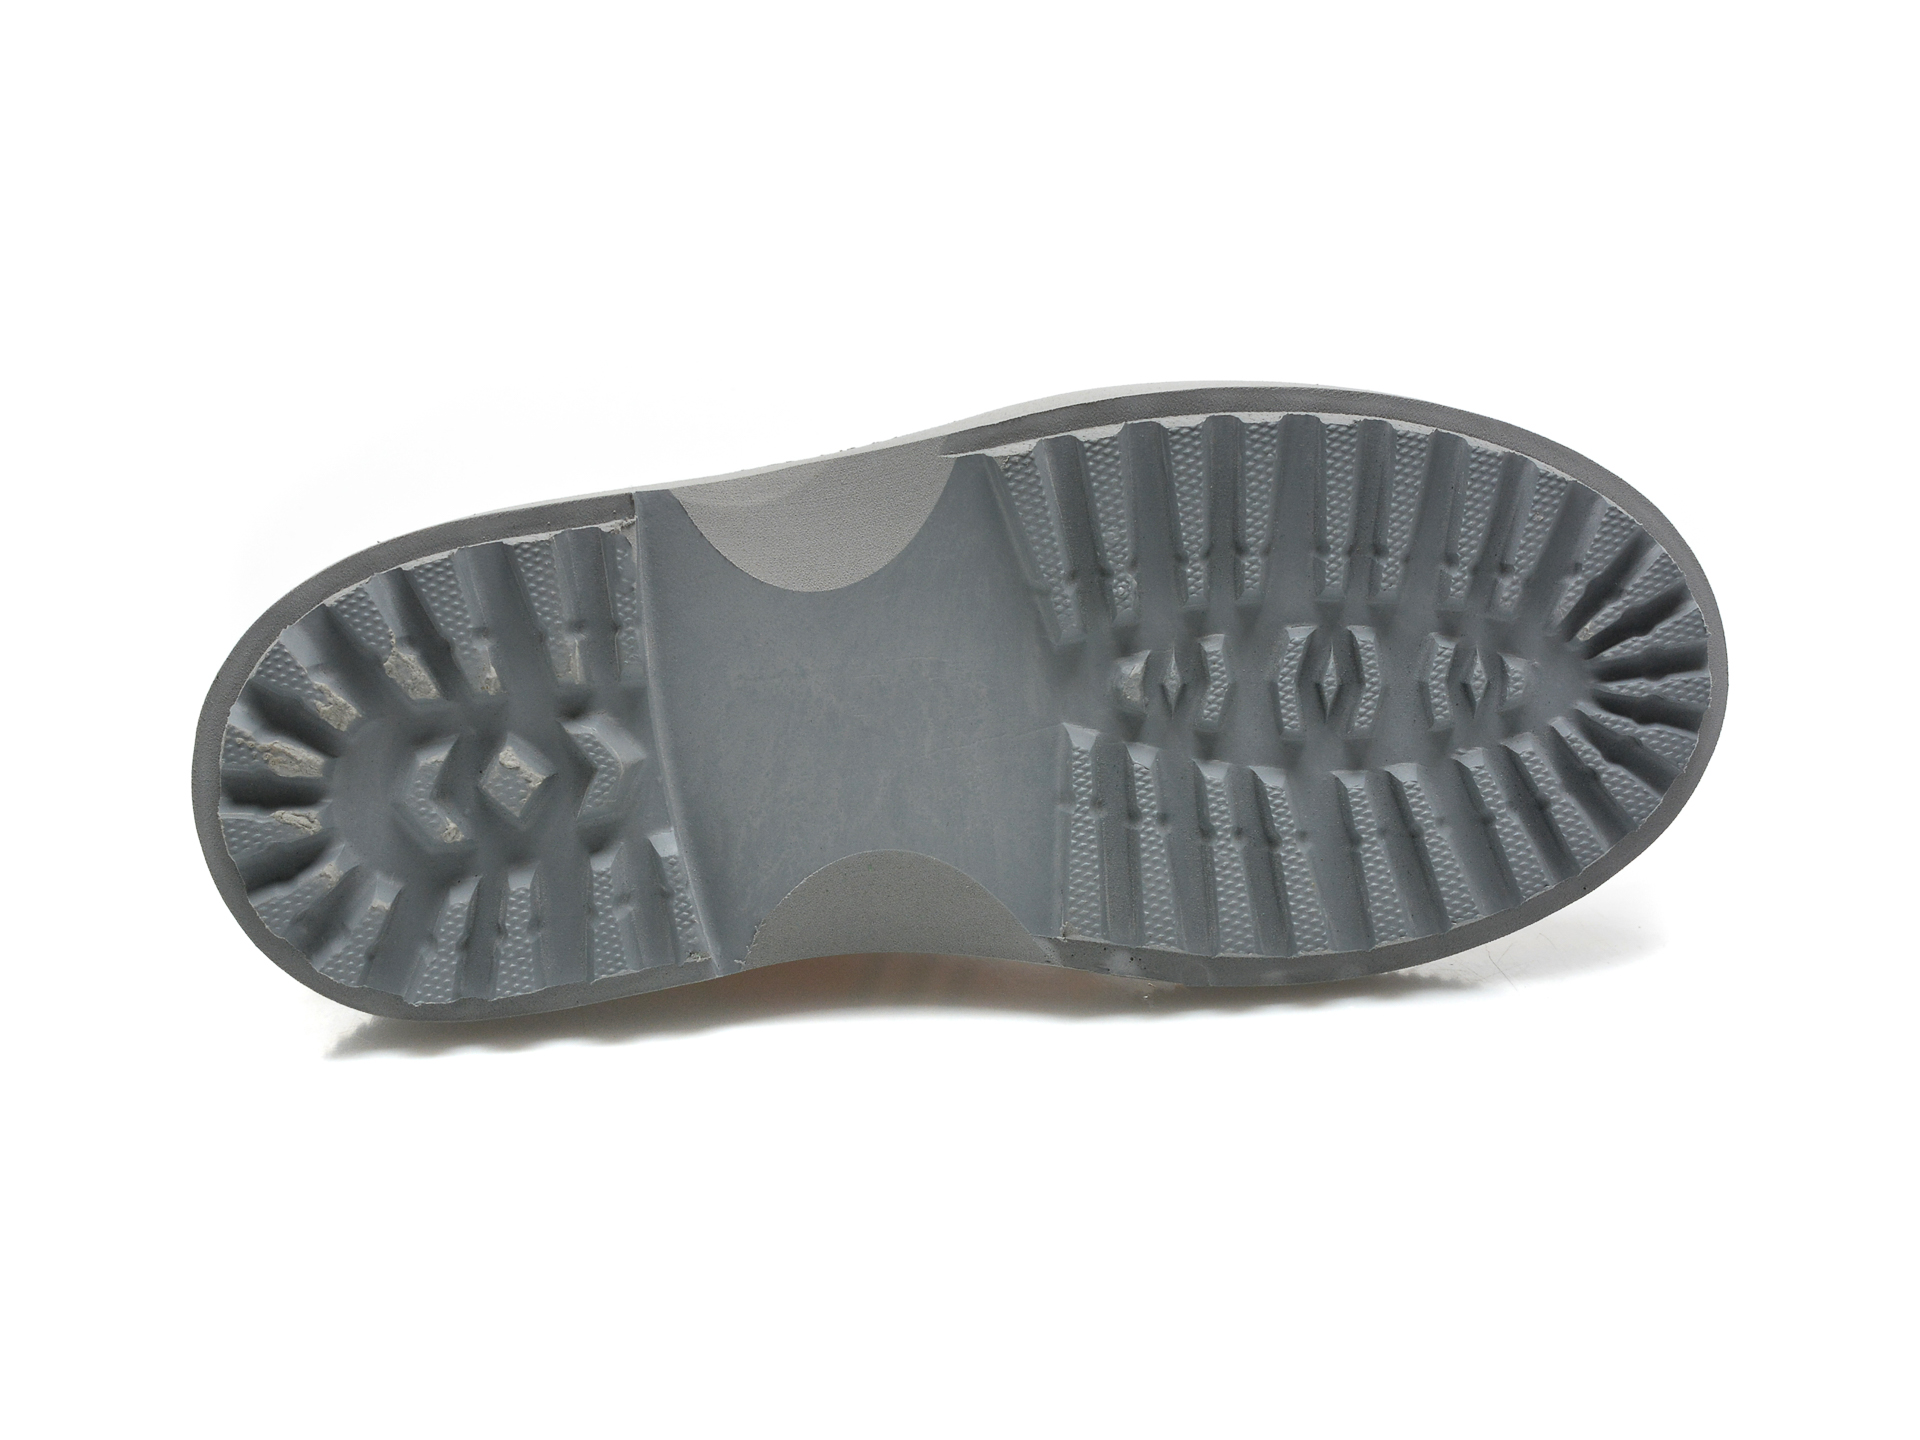 Poze Pantofi EPICA maro, 291GM64, din piele naturala tezyo.ro